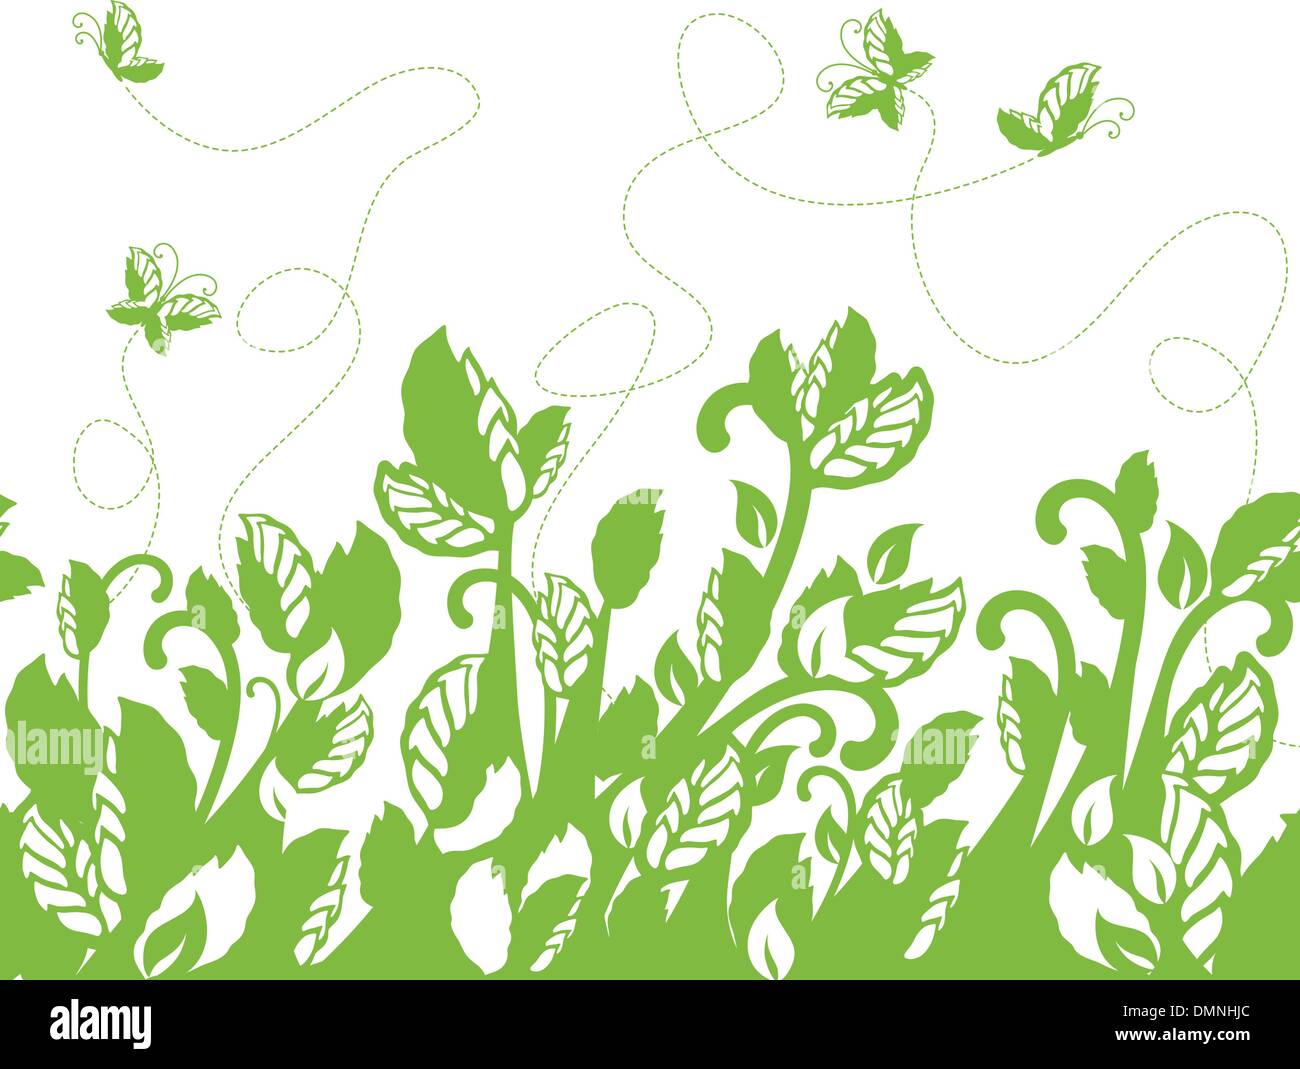 Feuillage vert sans frontière et de papillons Illustration de Vecteur